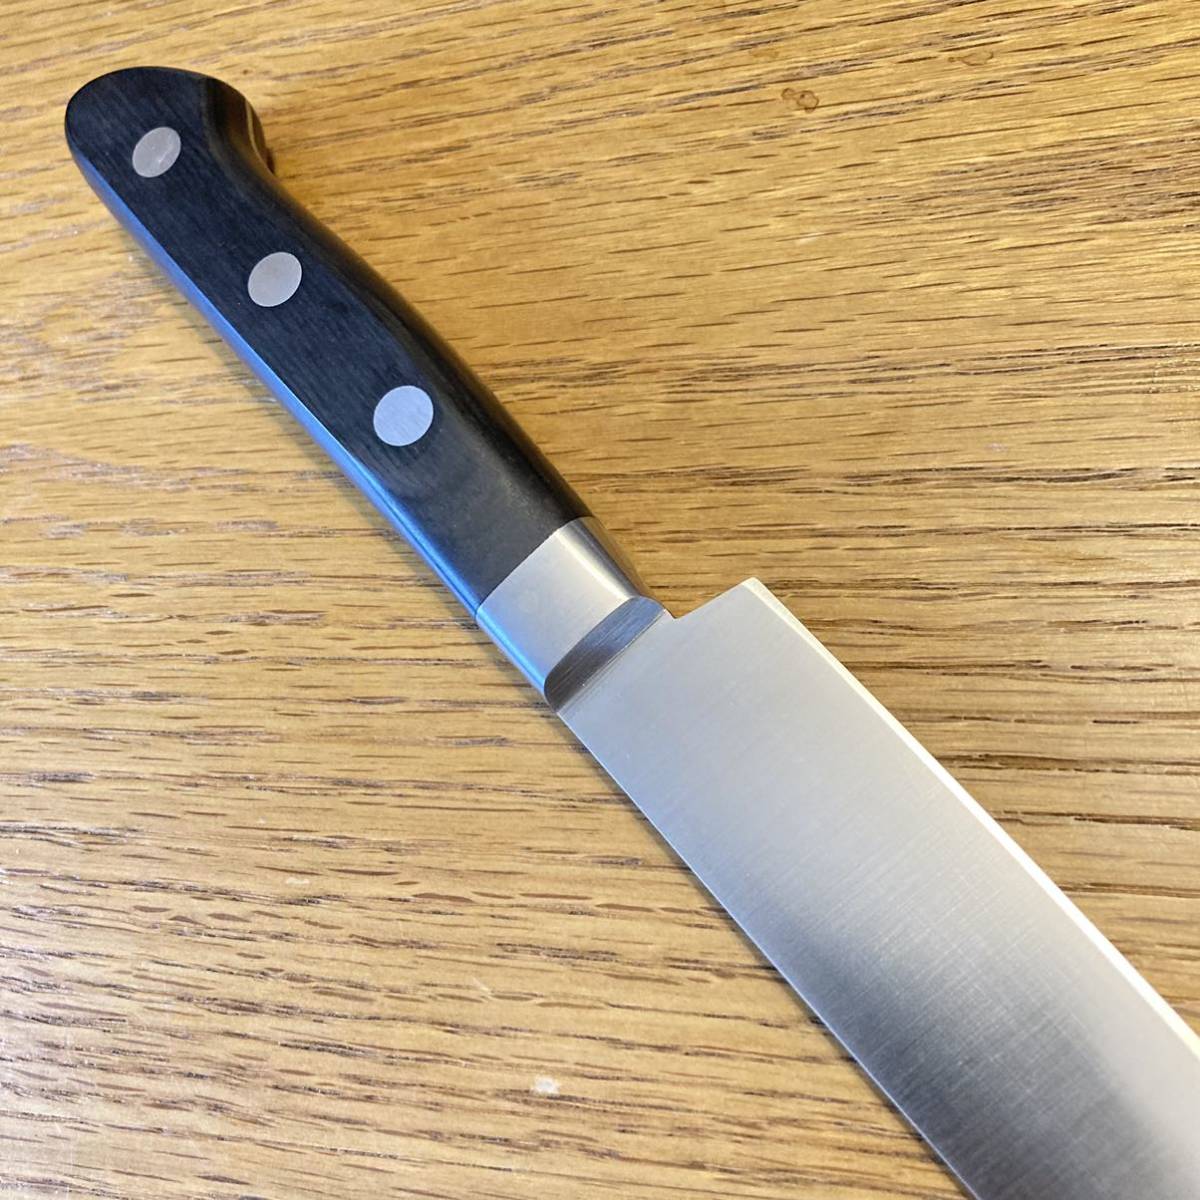 鍔屋 本焼 INOX 筋引包丁 庖丁 洋包丁 刃渡約24cm Japanese Knife 刃物 の画像8